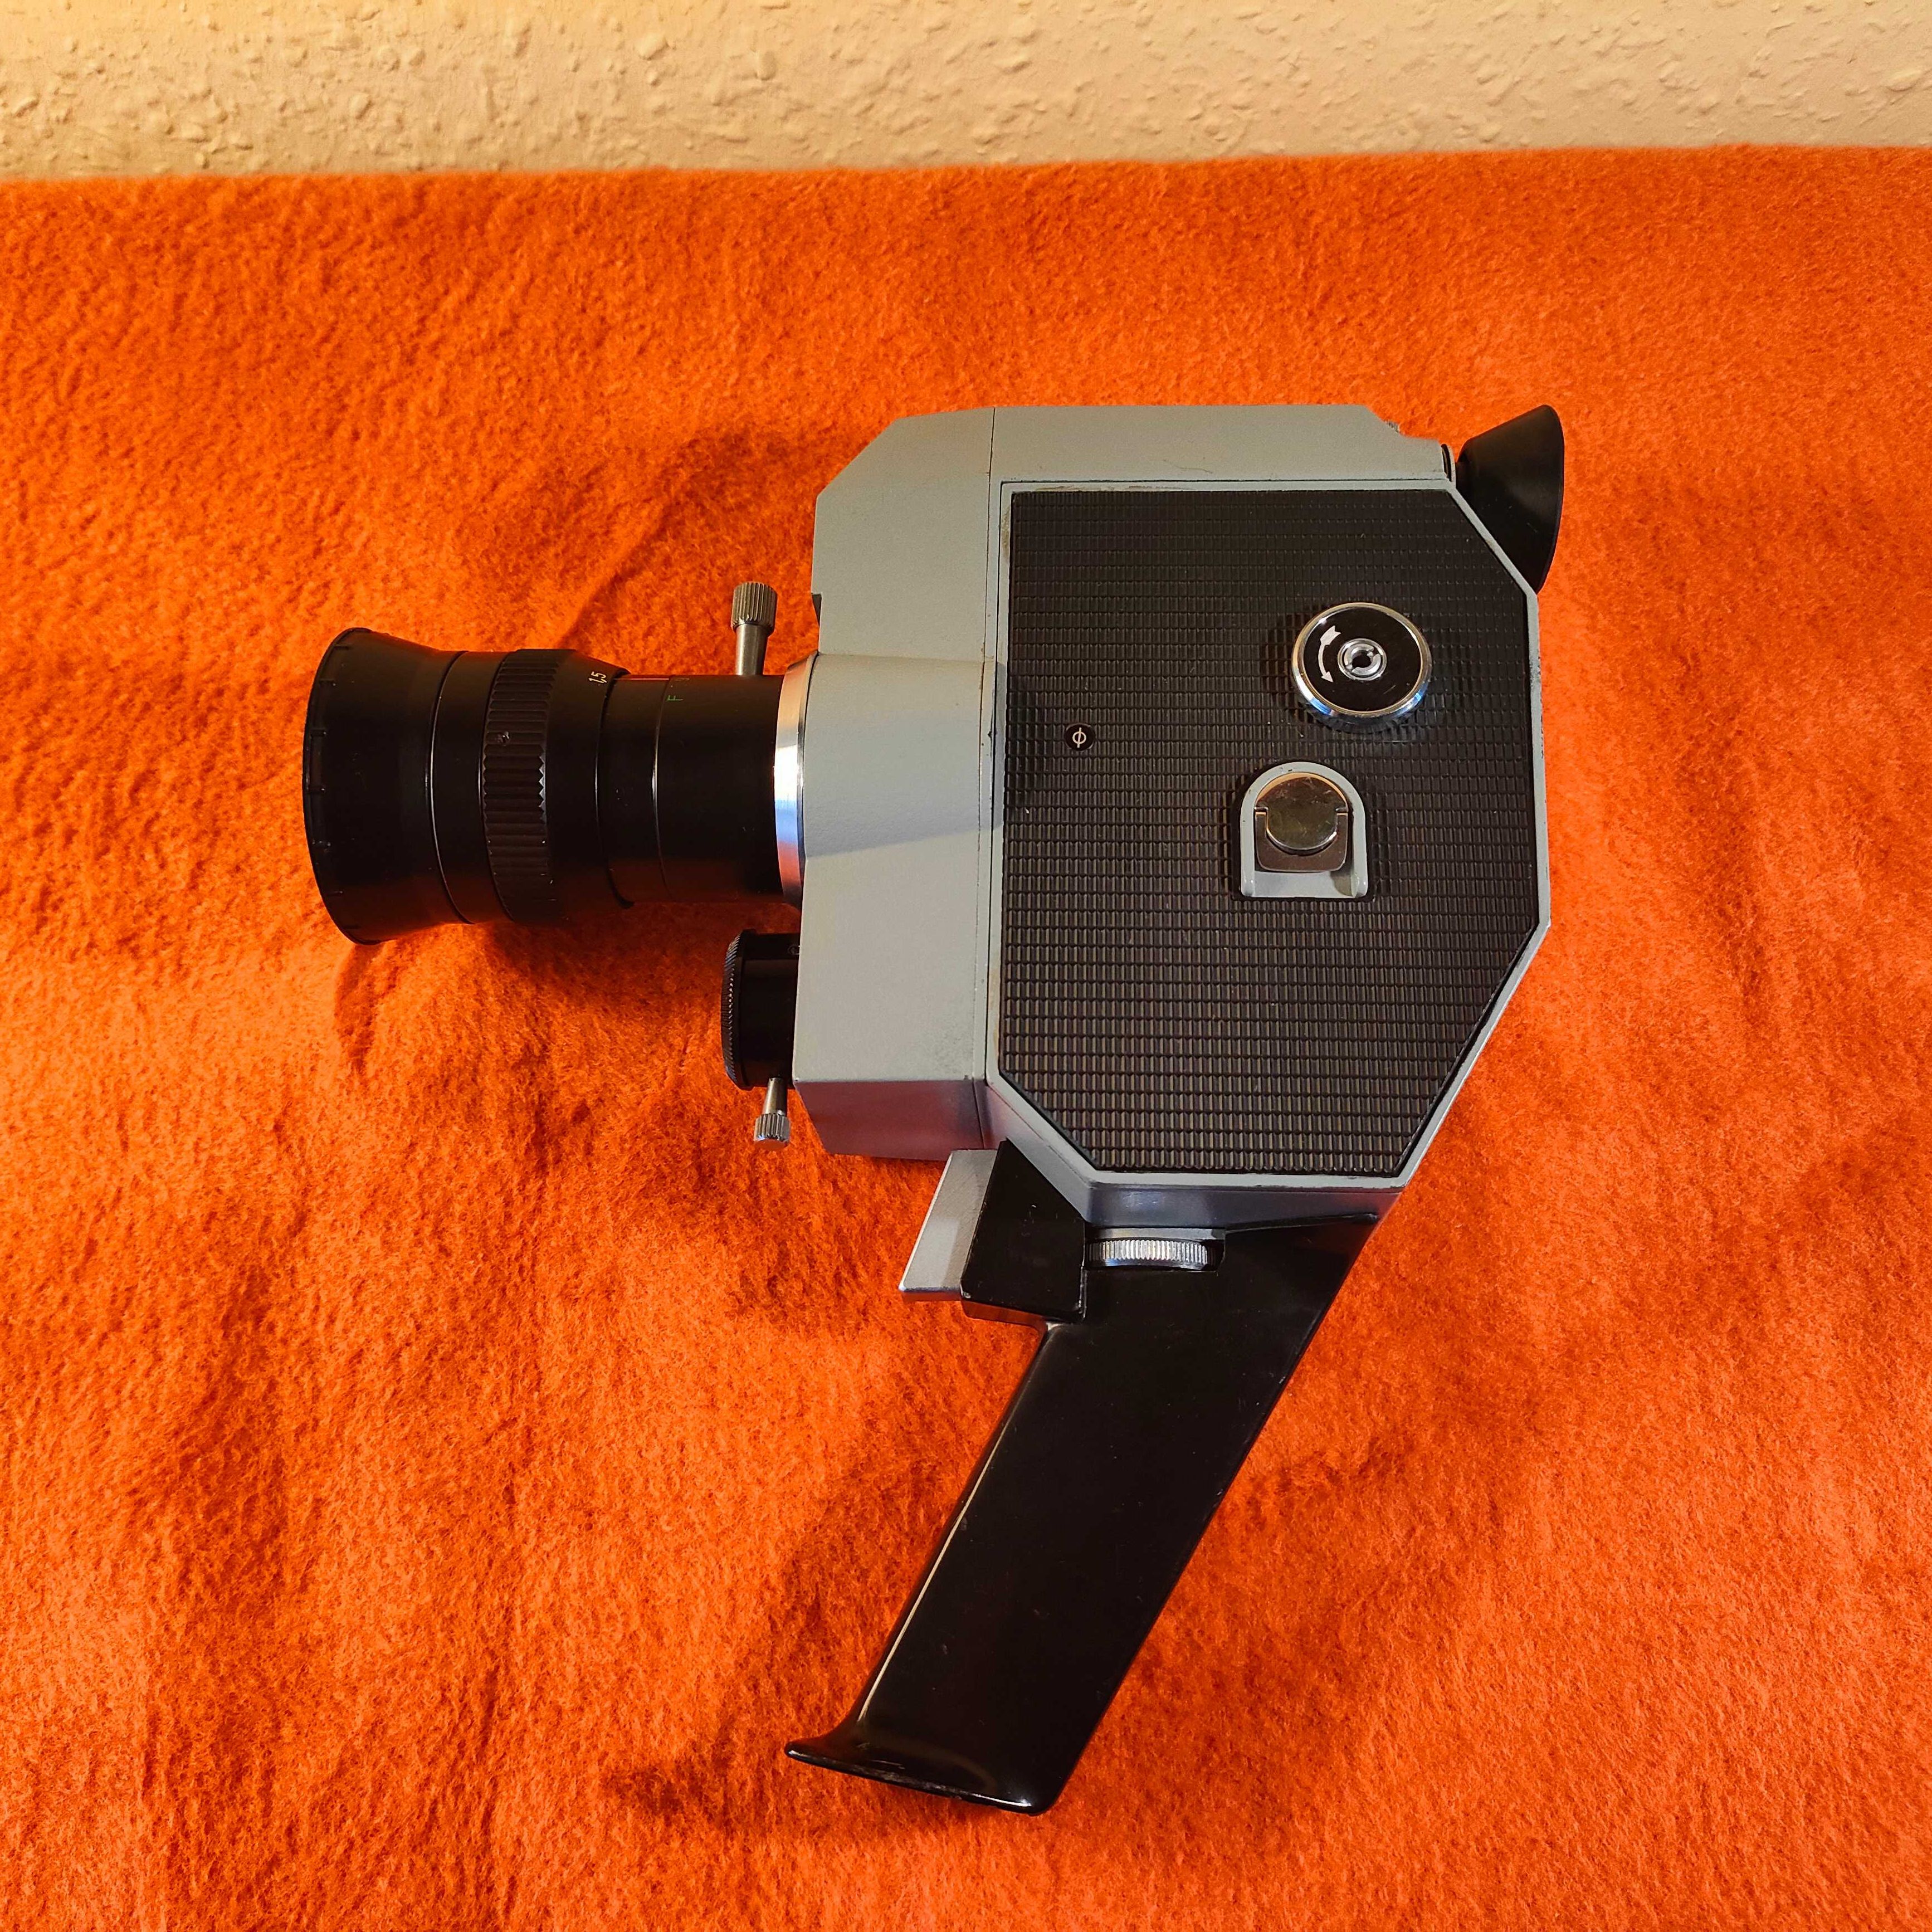 Radziecka kamera QUARZ-ZOOM DS8-3